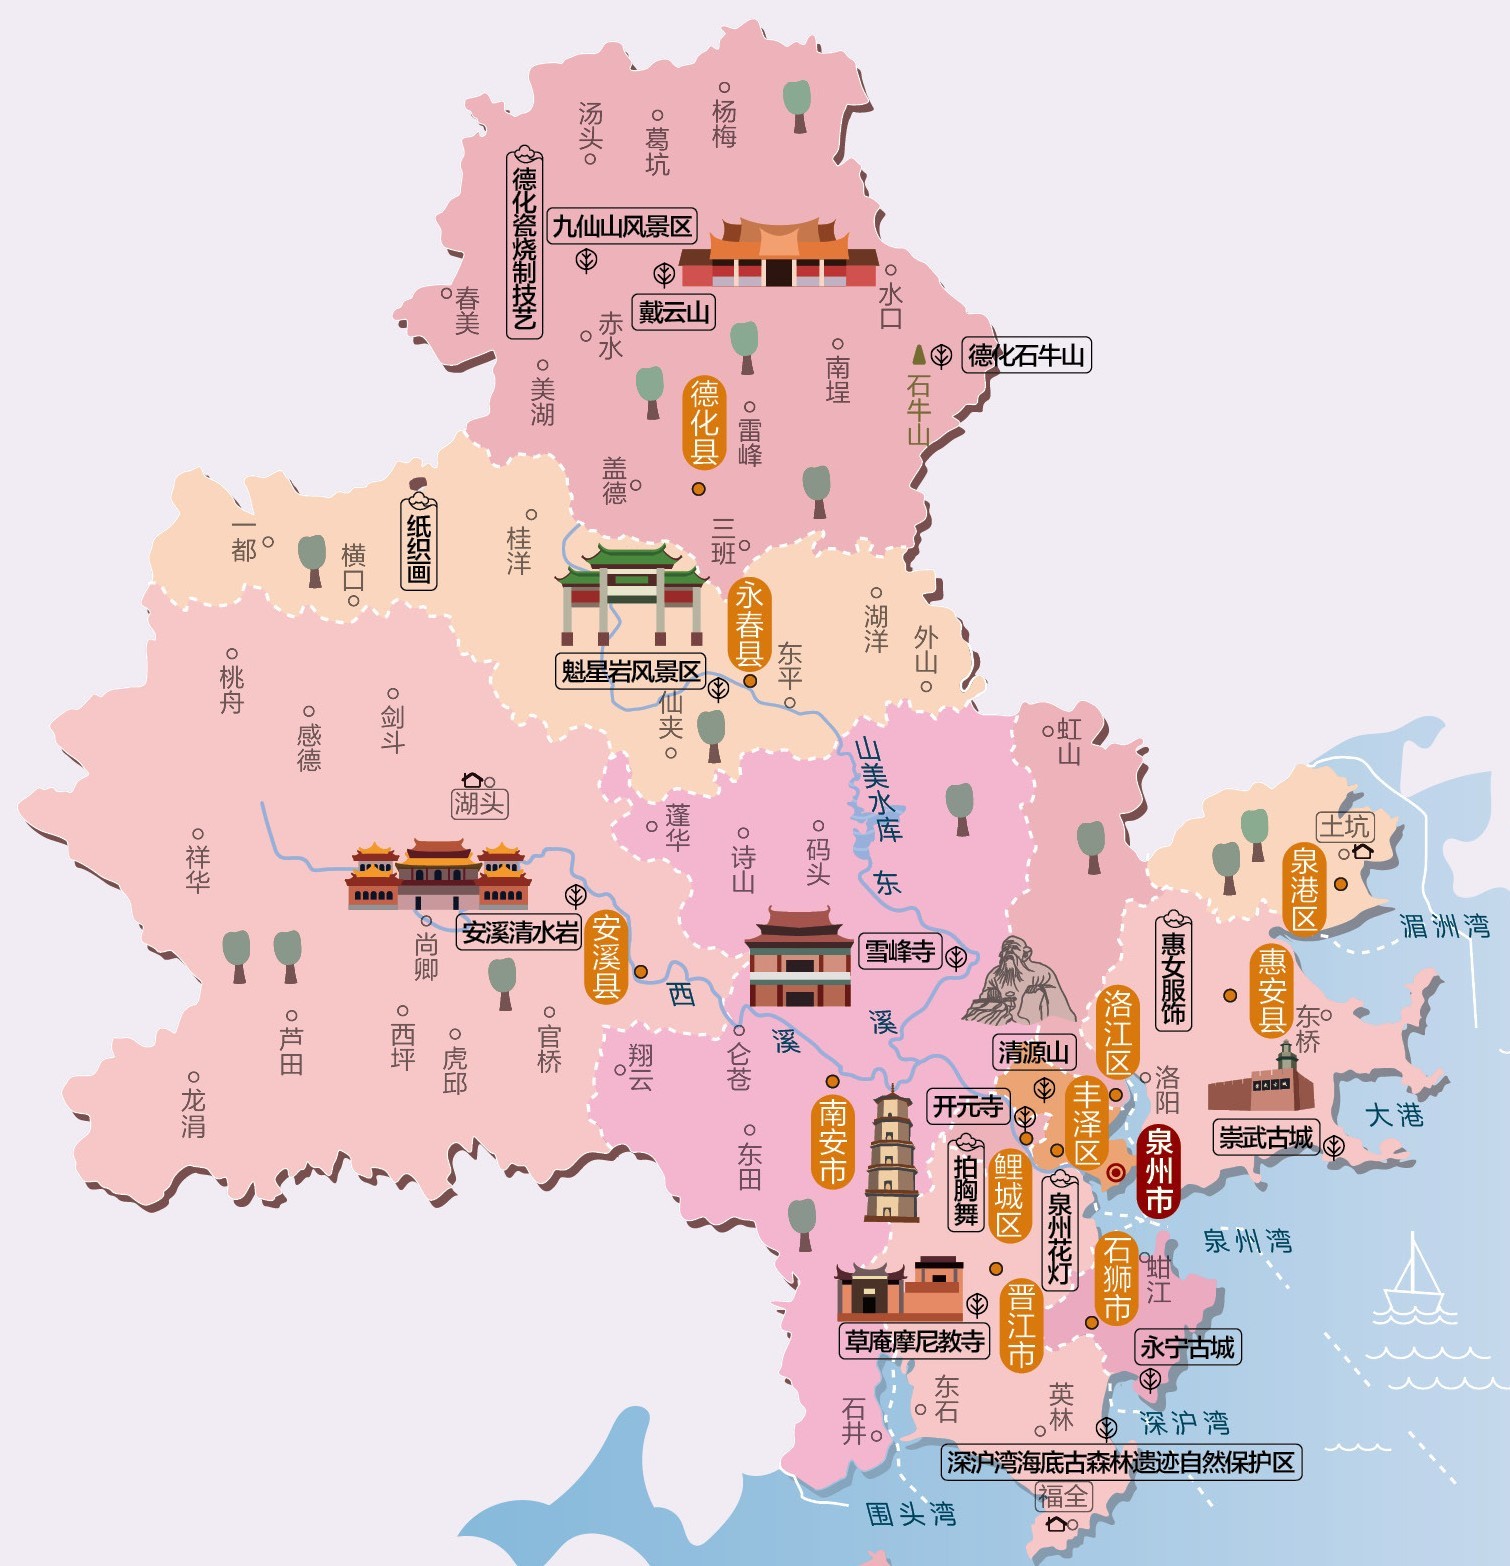 福建省旅游必备高清人文地图 9个地级市